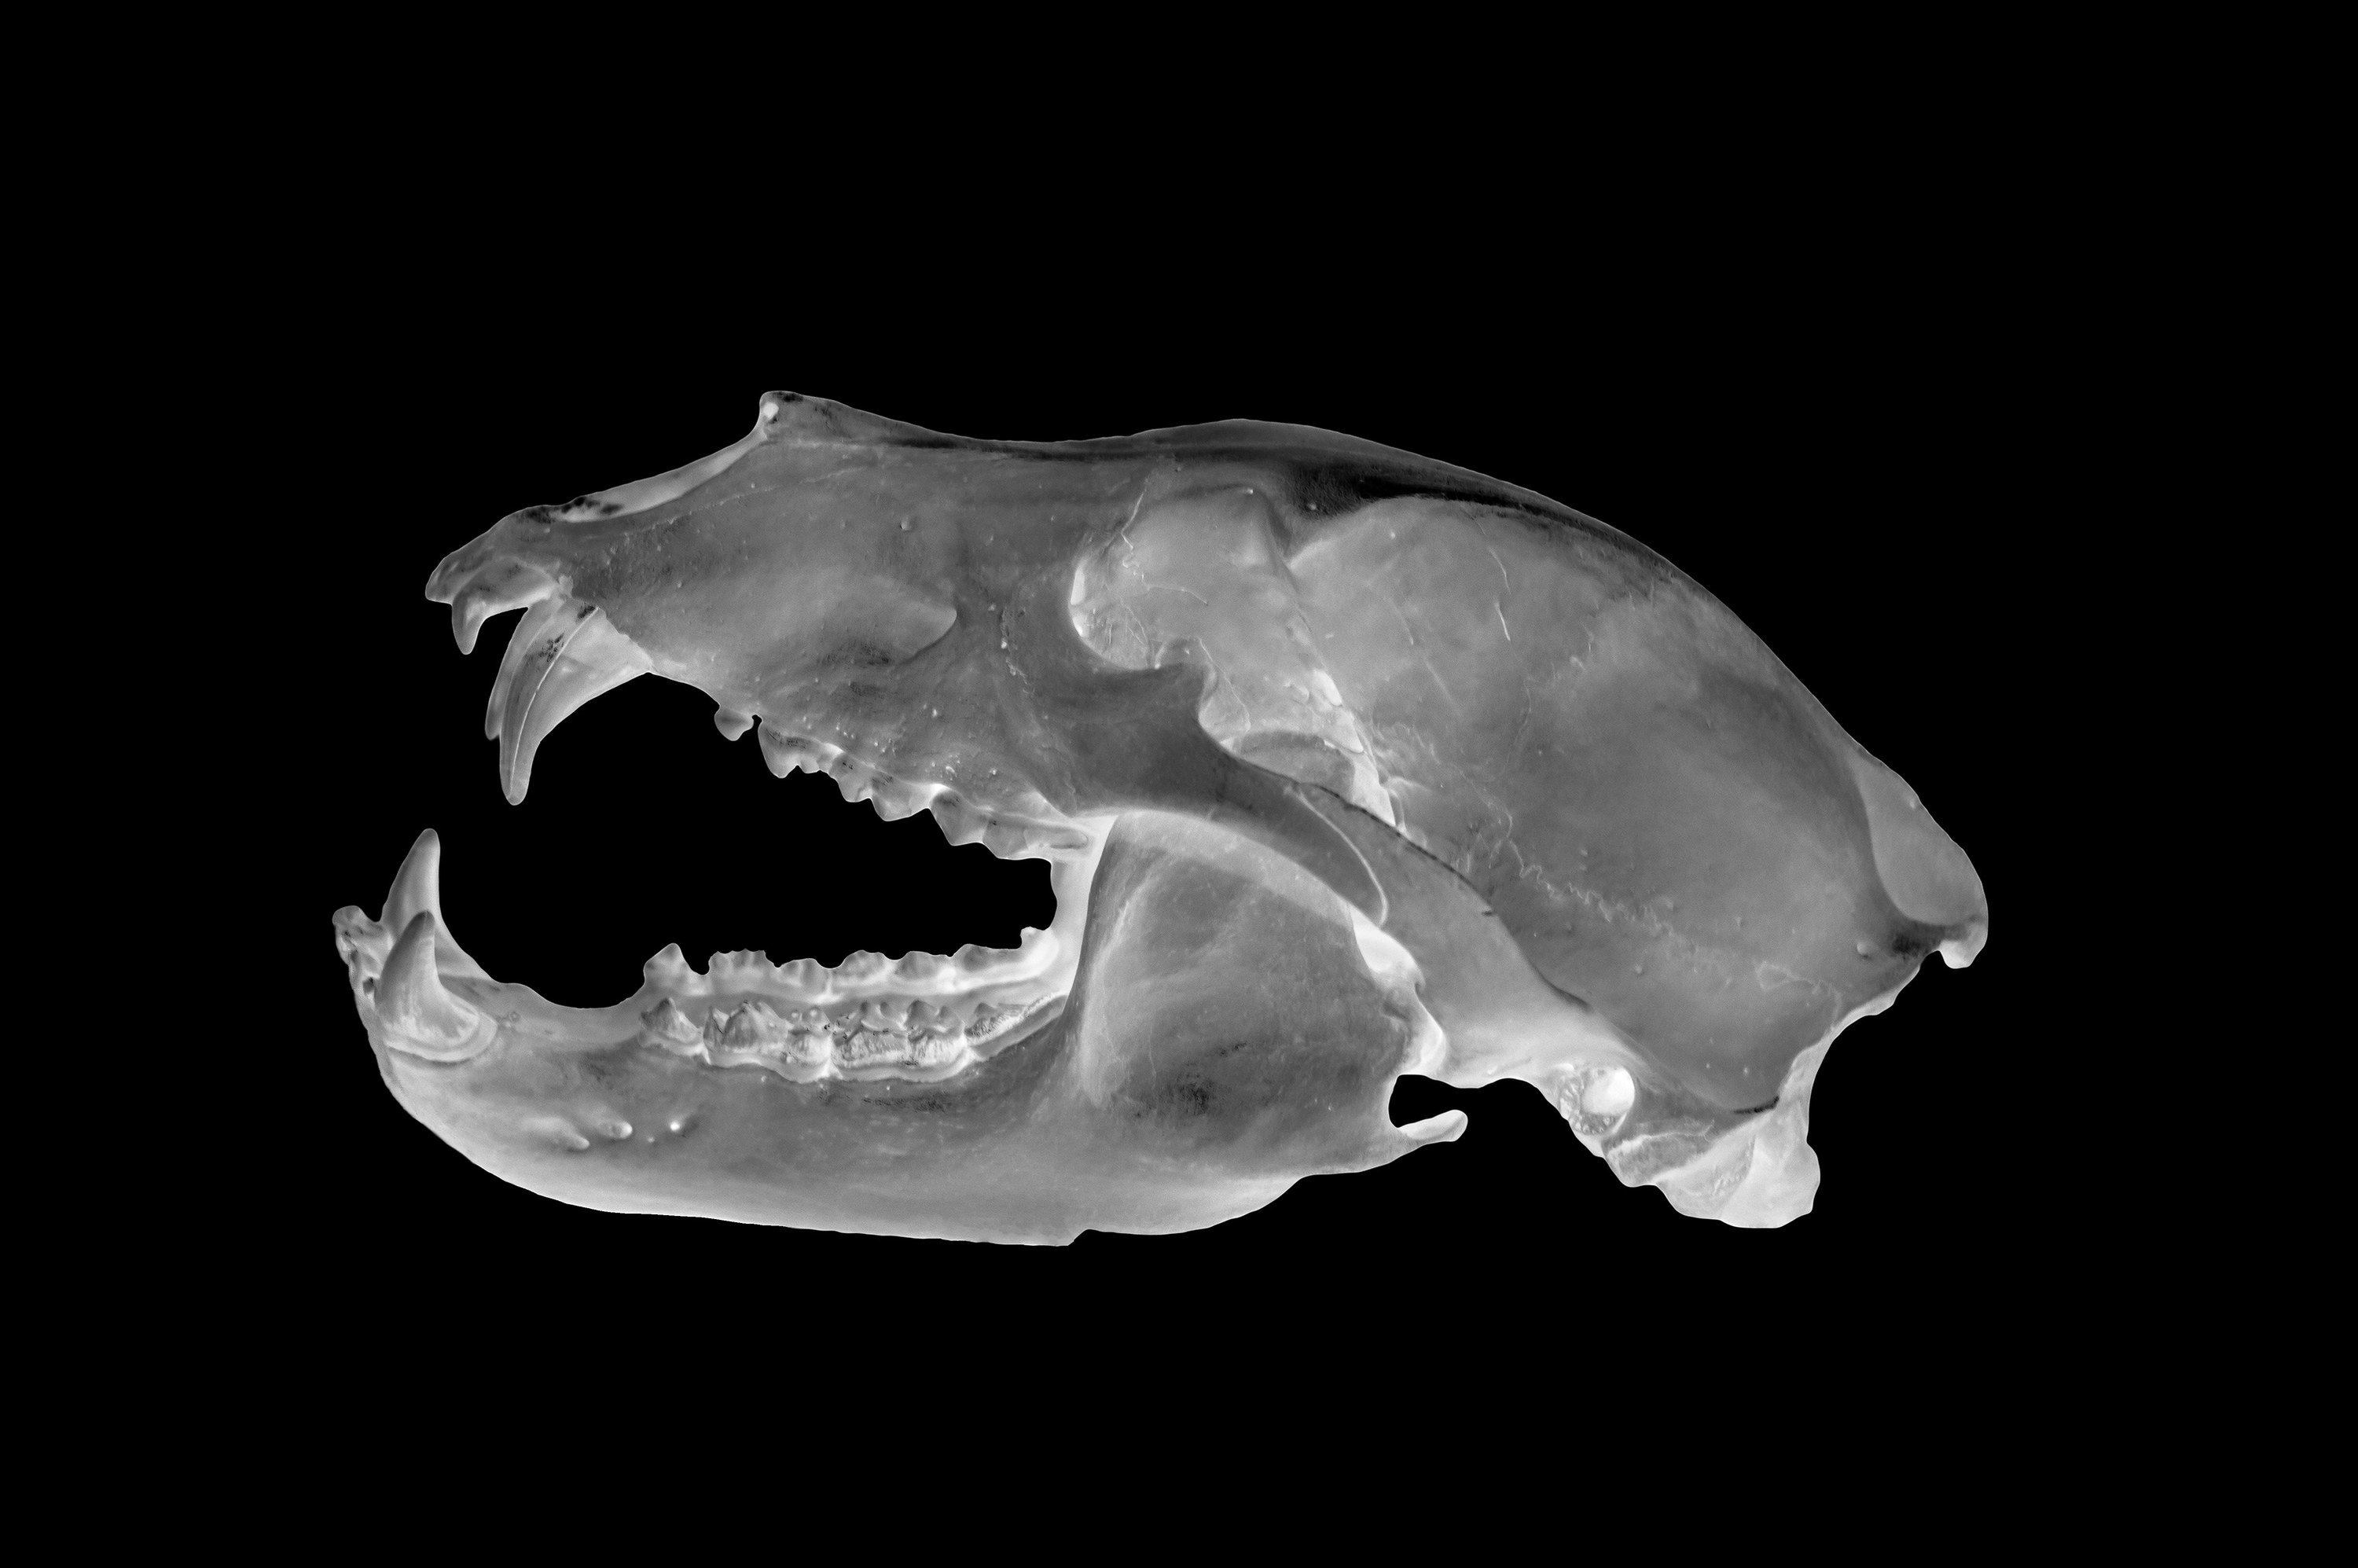 X-ray of a bear skull